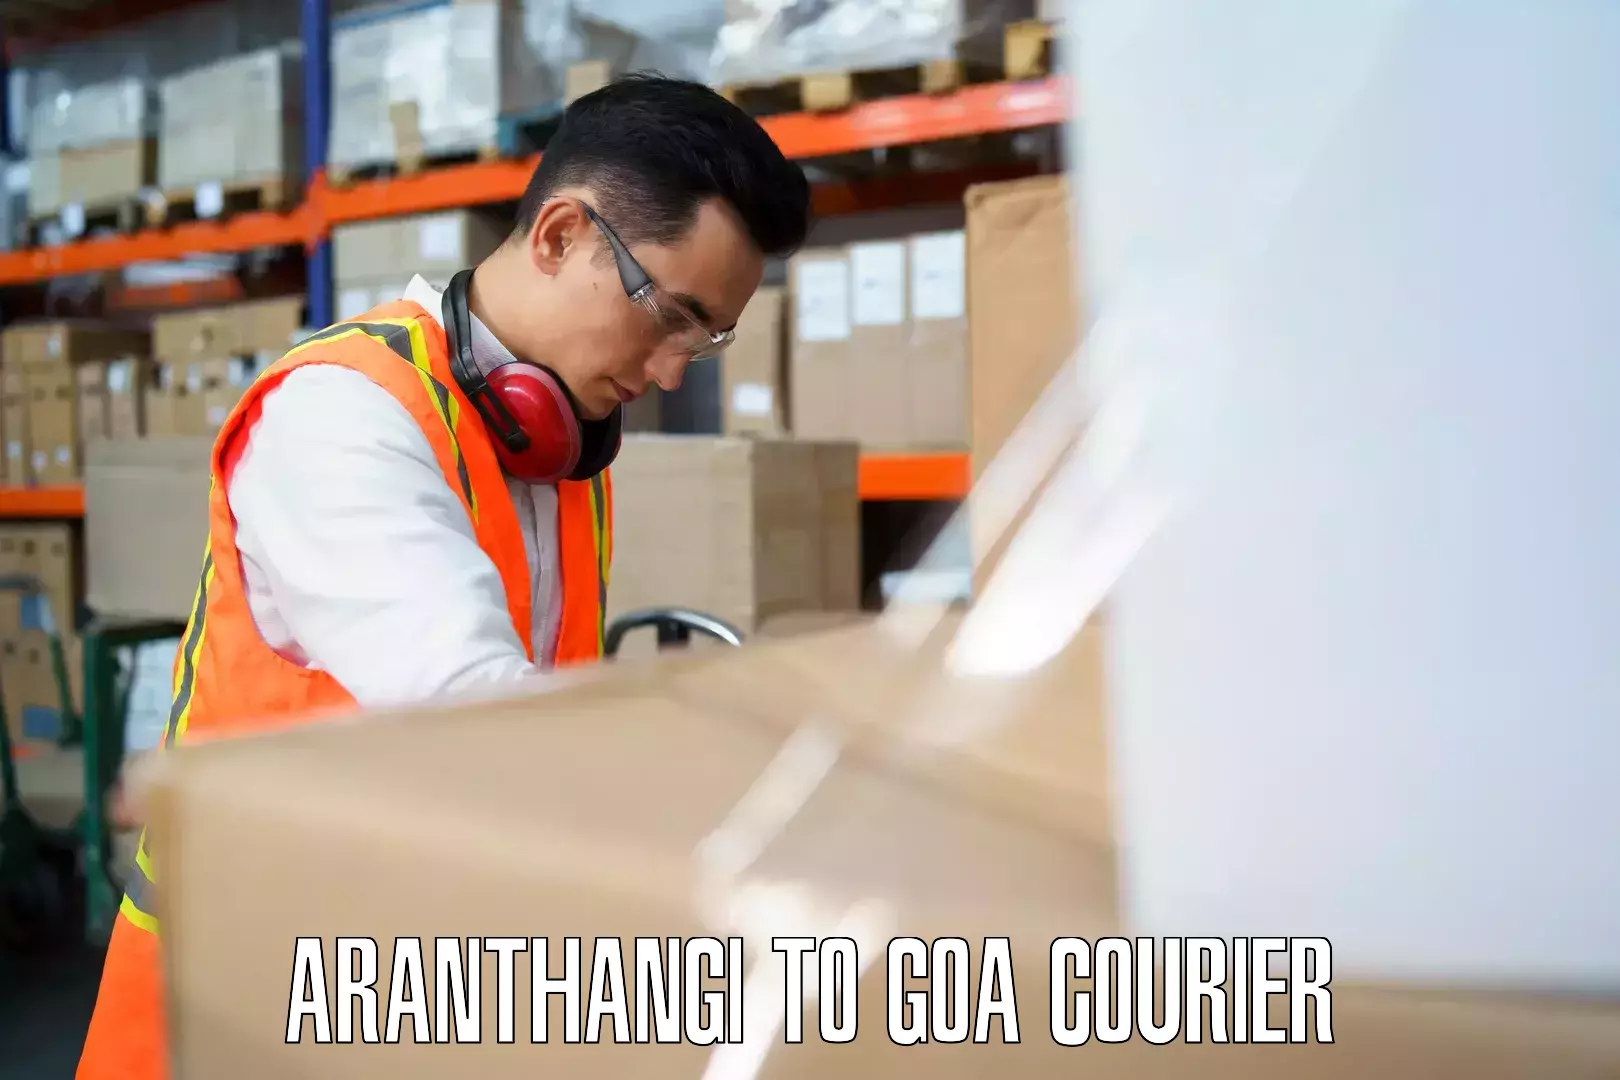 Luggage transport tips Aranthangi to South Goa